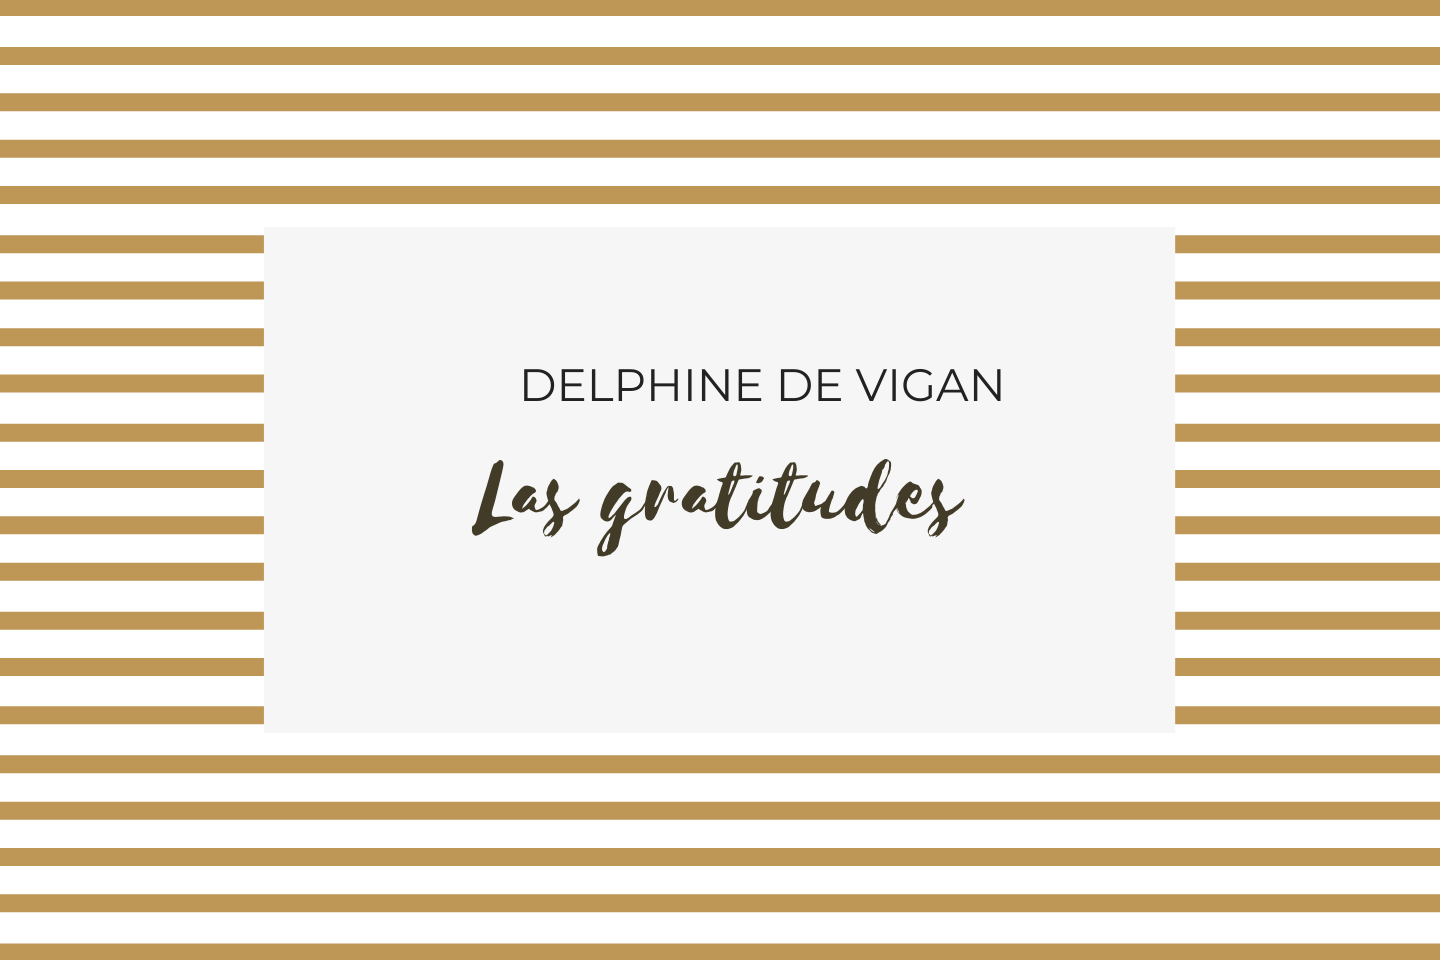 Las gratitudes de Delphine de Vigan